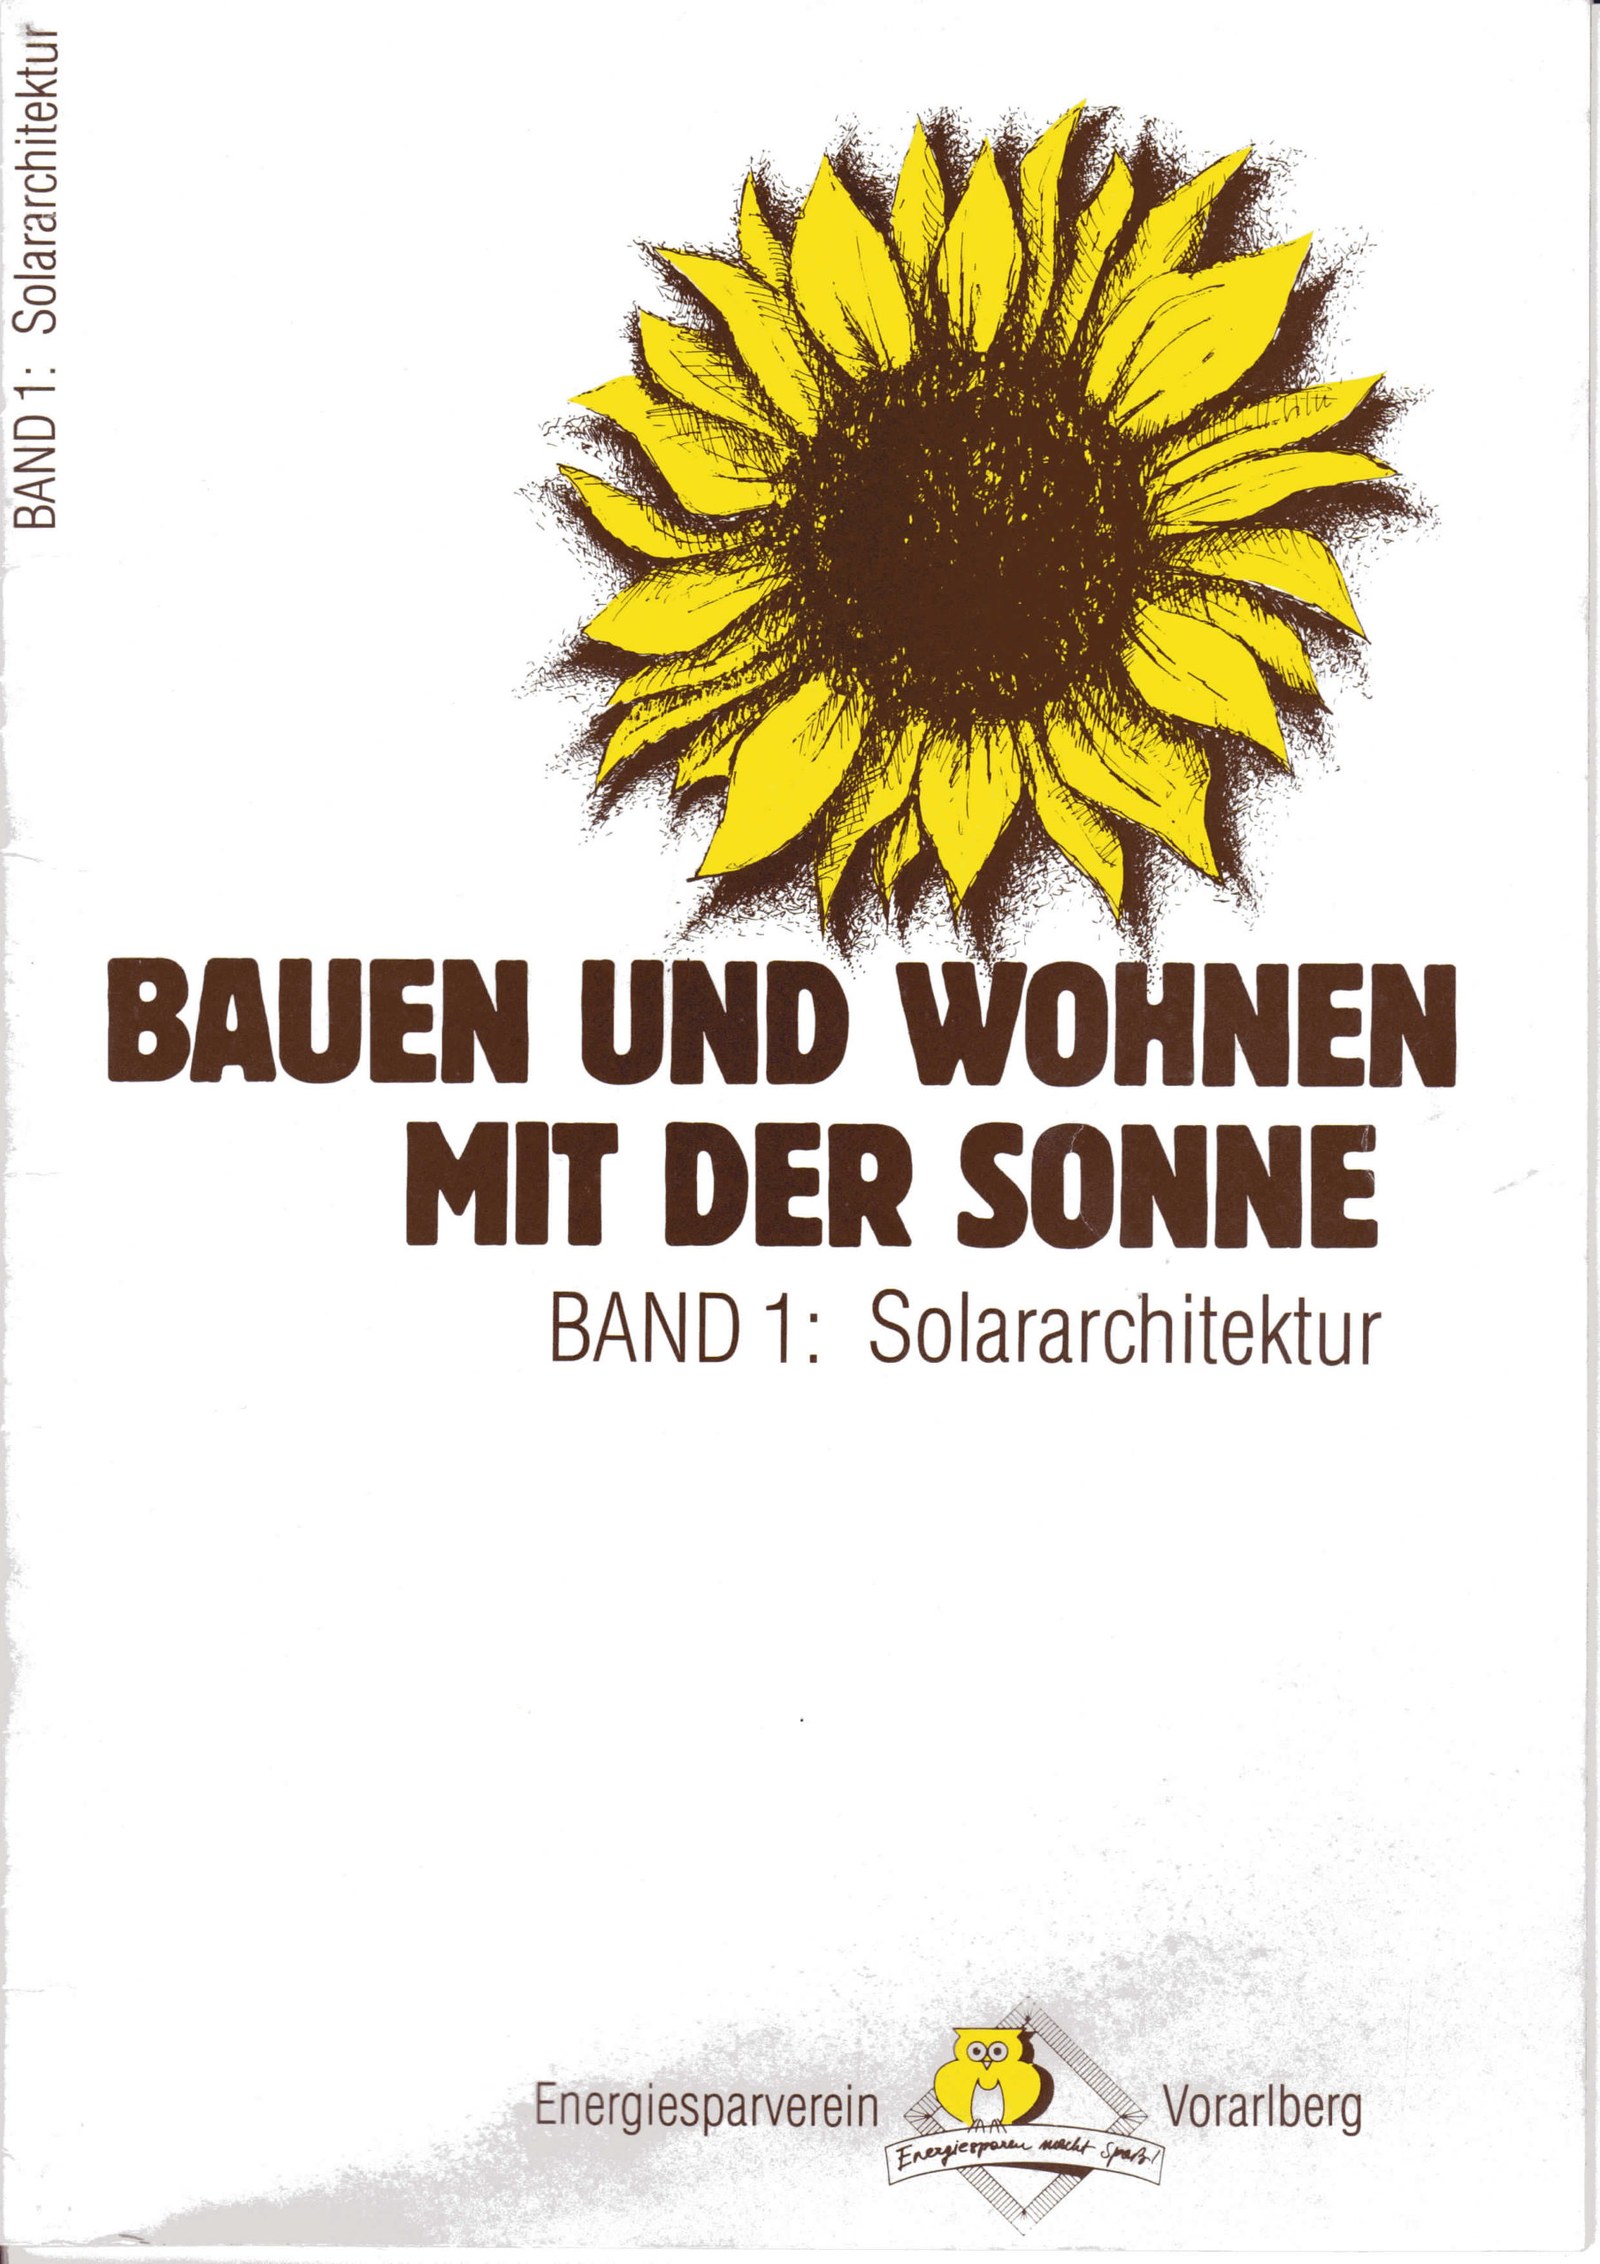 Bauen und Wohnen mit der Sonne Band 1 1988 Cover